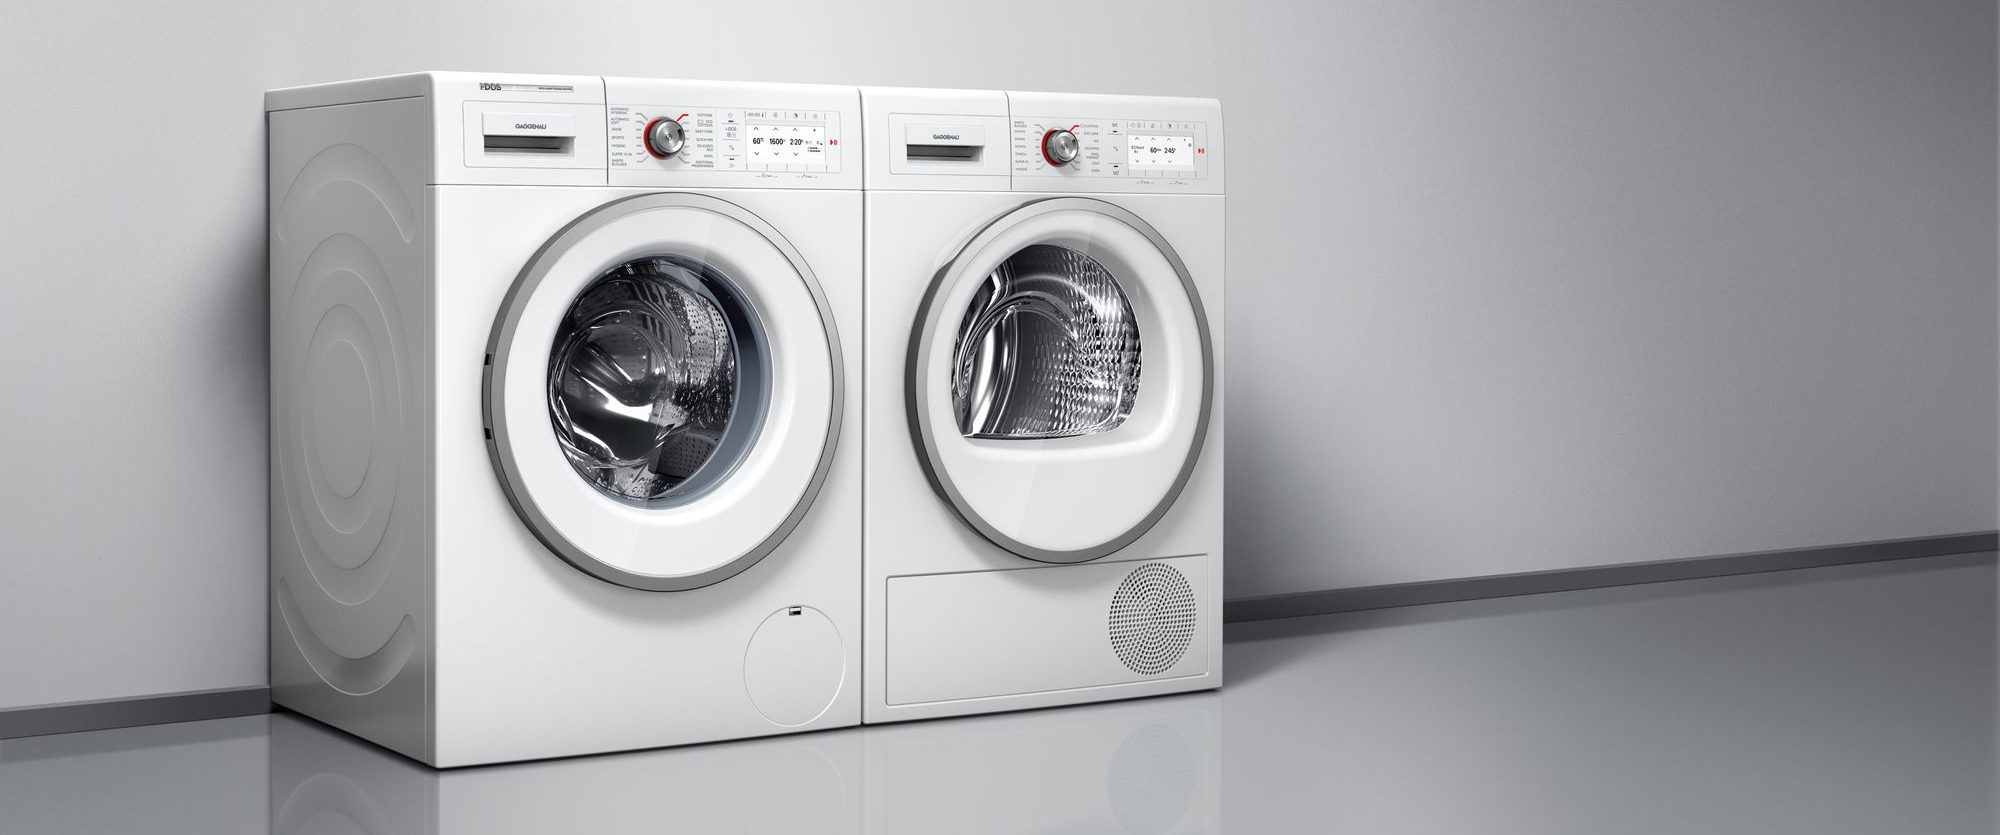 gaggenau Washing_machines